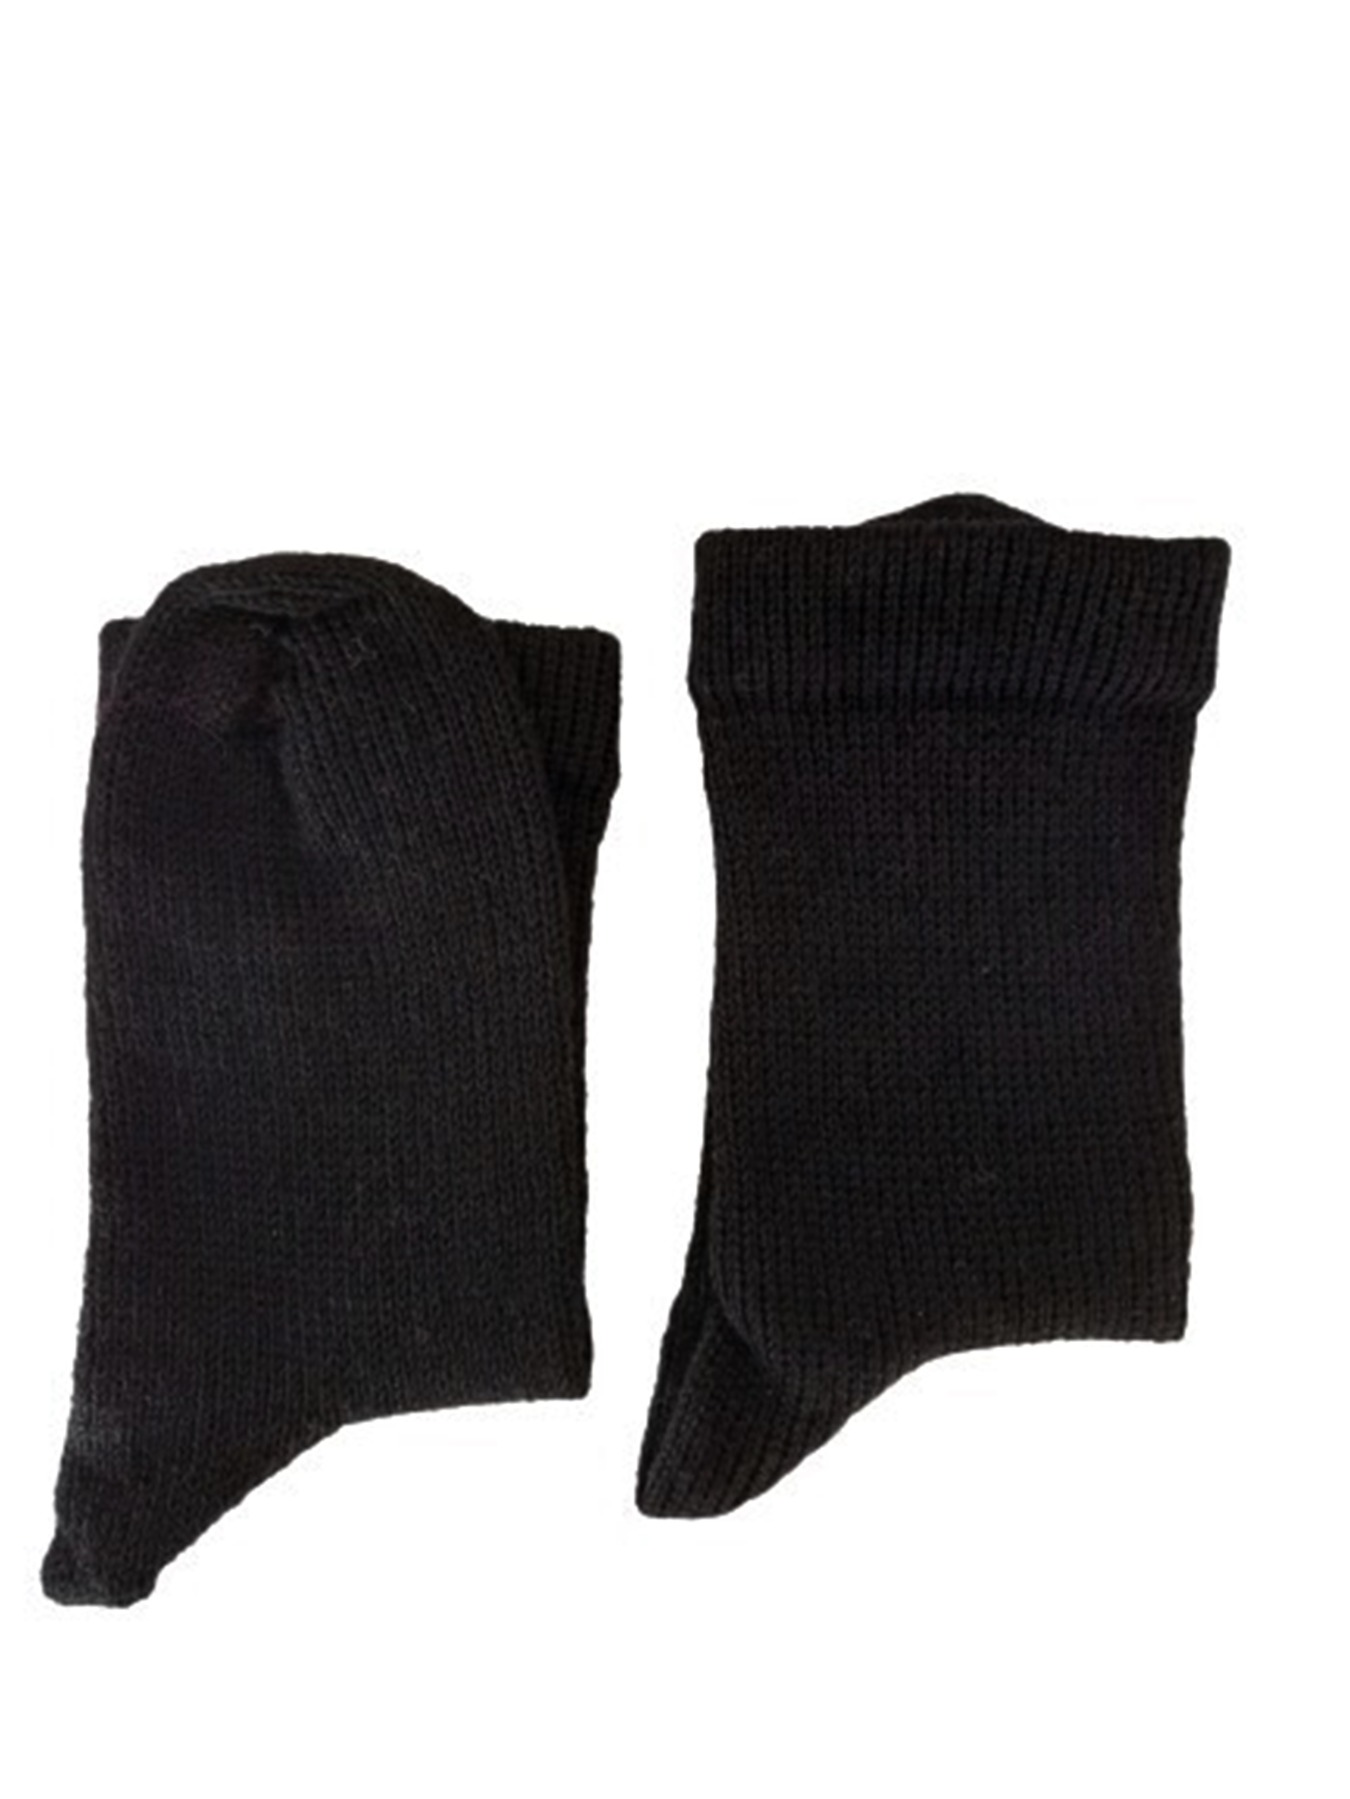 Größe 37 - Socken in klassischem Schwarz 2